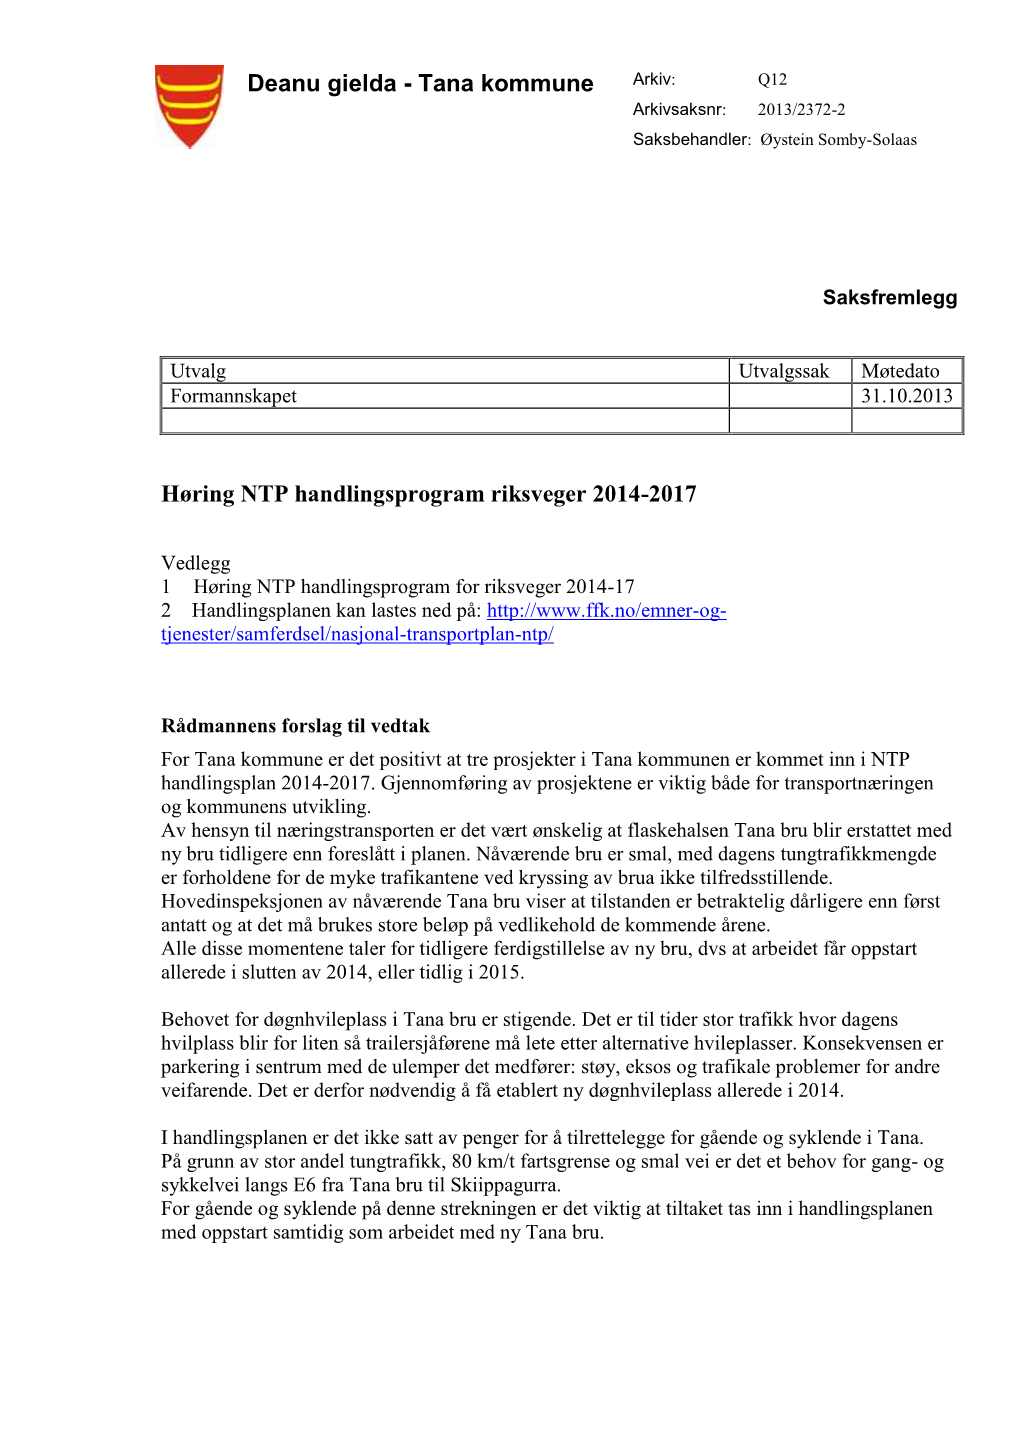 Høring NTP Handlingsprogram for Riksveger 2014-17 2 Handlingsplanen Kan Lastes Ned På: Tjenester/Samferdsel/Nasjonal-Transportplan-Ntp